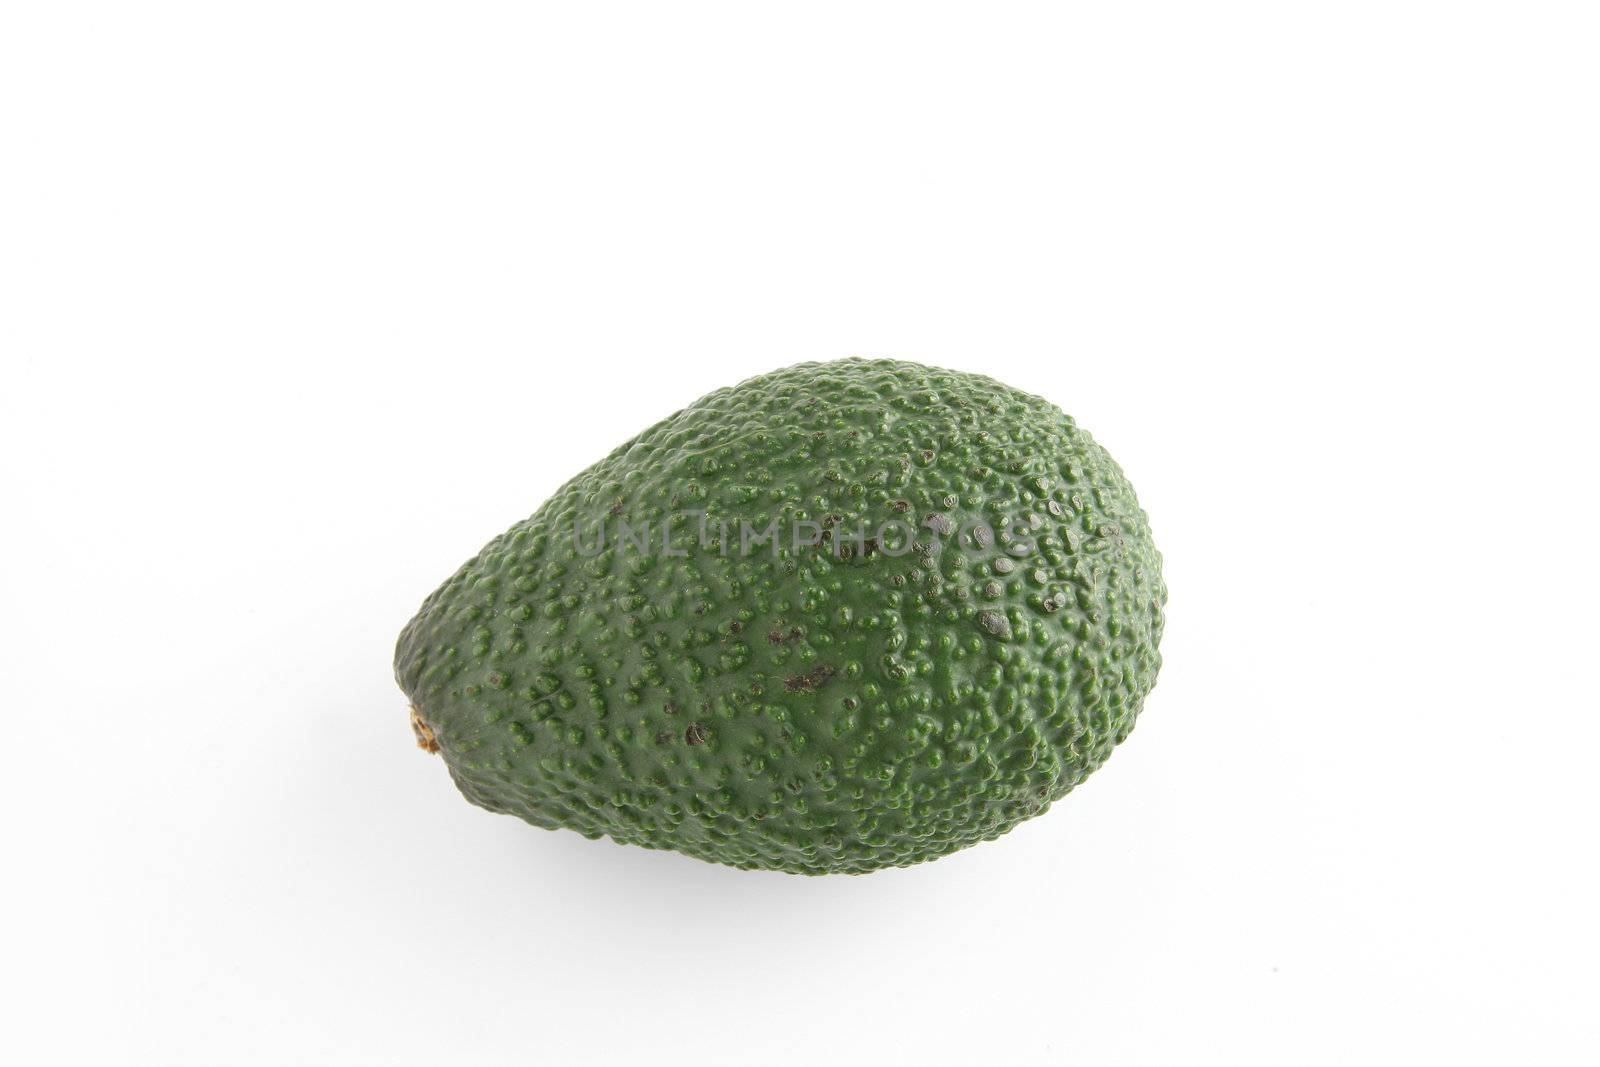 Avocado by phovoir